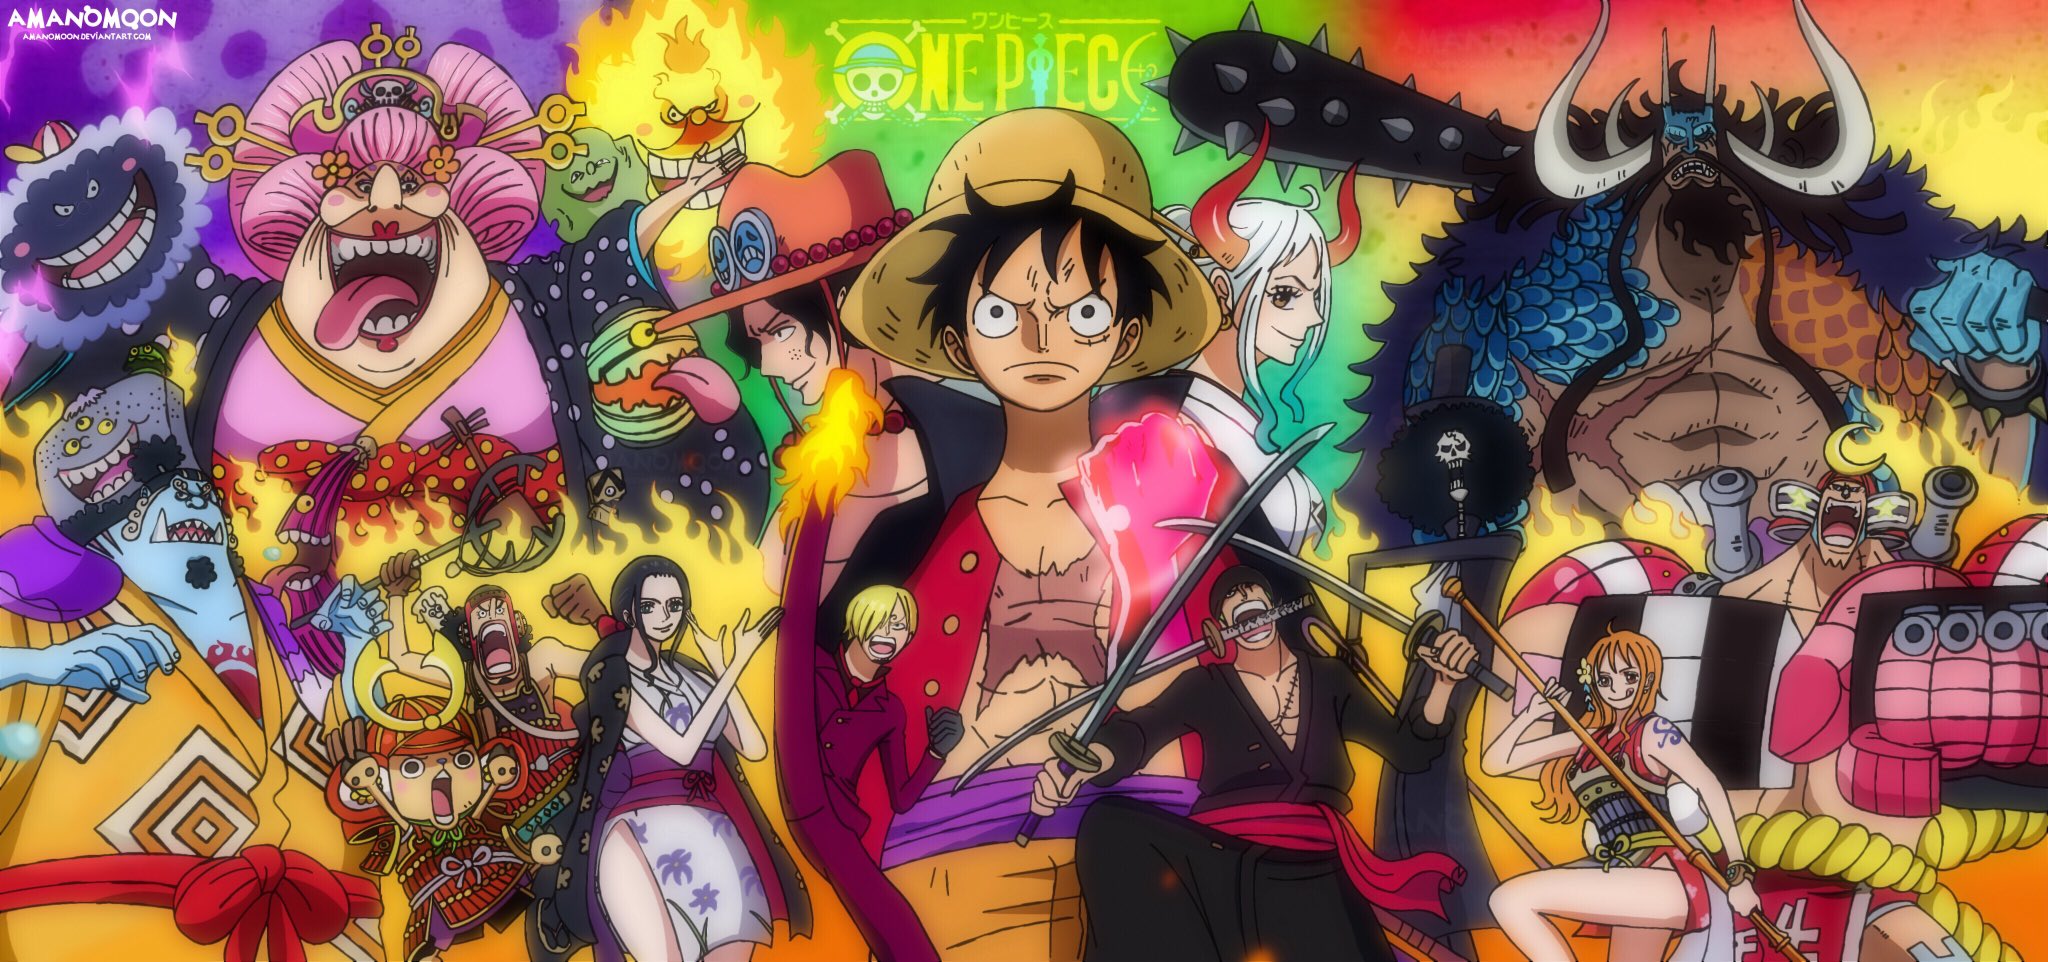 Bìa tập 100: Sự kiện ấn tượng khiến không chỉ các fan One Piece mà còn cả giới trẻ vô cùng phấn khởi! Hãy chiêm ngưỡng bức hình bìa của Tập 100, chứa đựng rất nhiều bí mật và điểm nhấn thú vị.